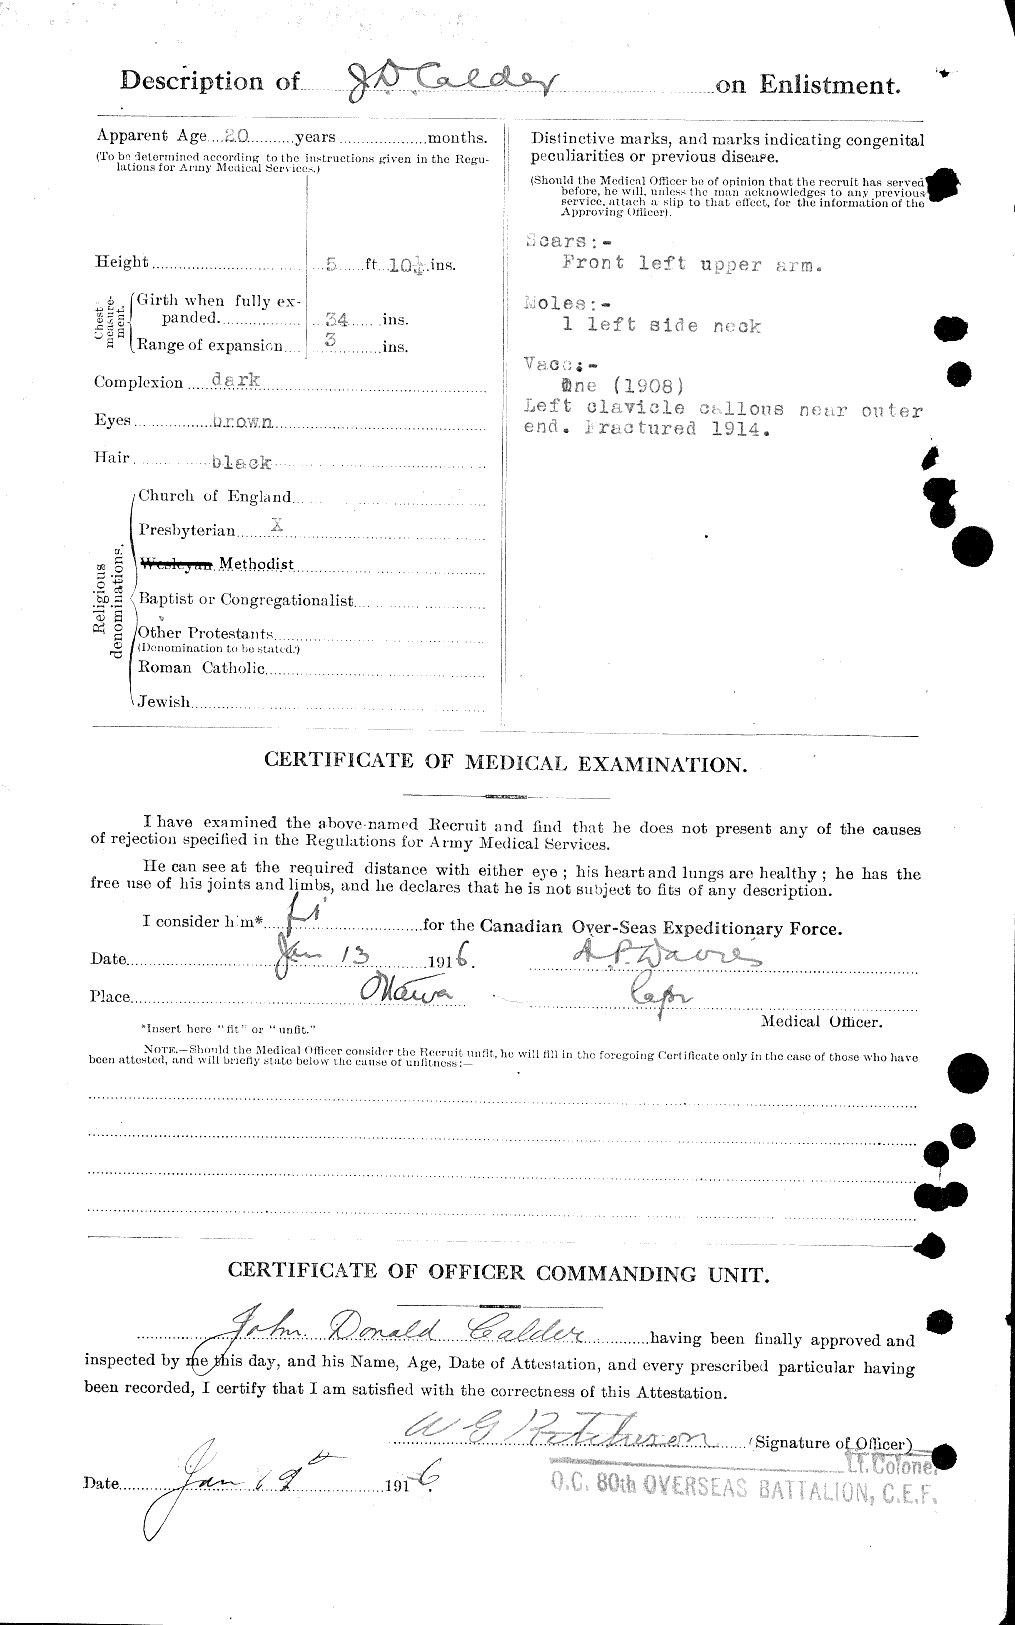 Dossiers du Personnel de la Première Guerre mondiale - CEC 000944b